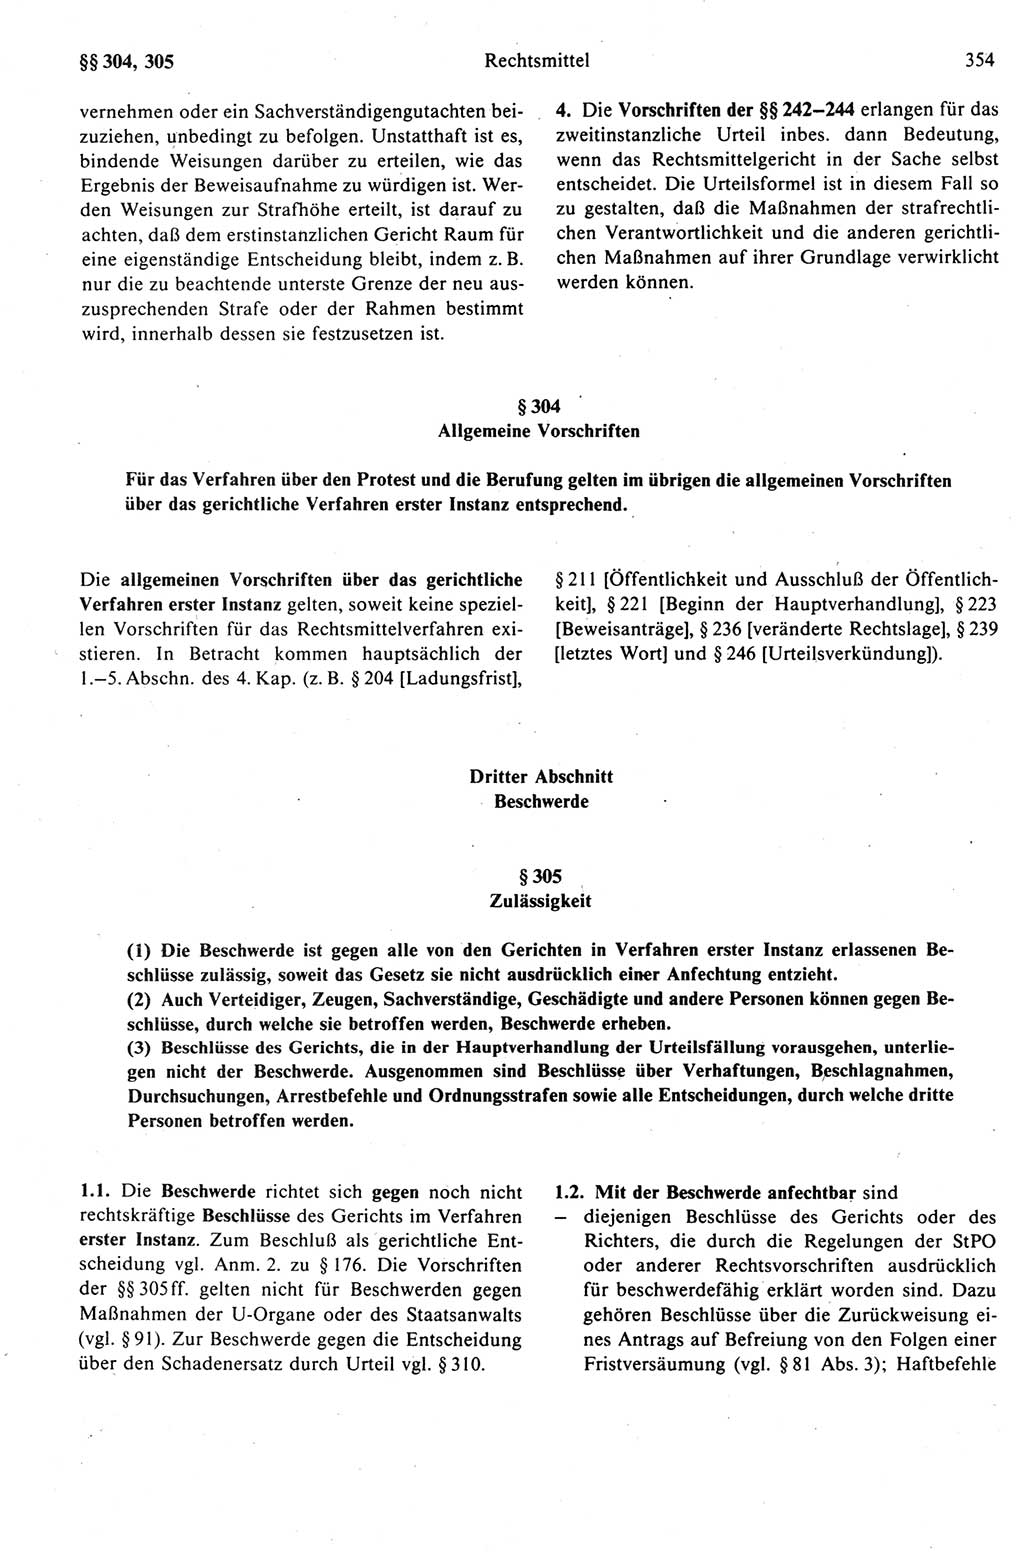 Strafprozeßrecht der DDR (Deutsche Demokratische Republik), Kommentar zur Strafprozeßordnung (StPO) 1989, Seite 354 (Strafprozeßr. DDR Komm. StPO 1989, S. 354)